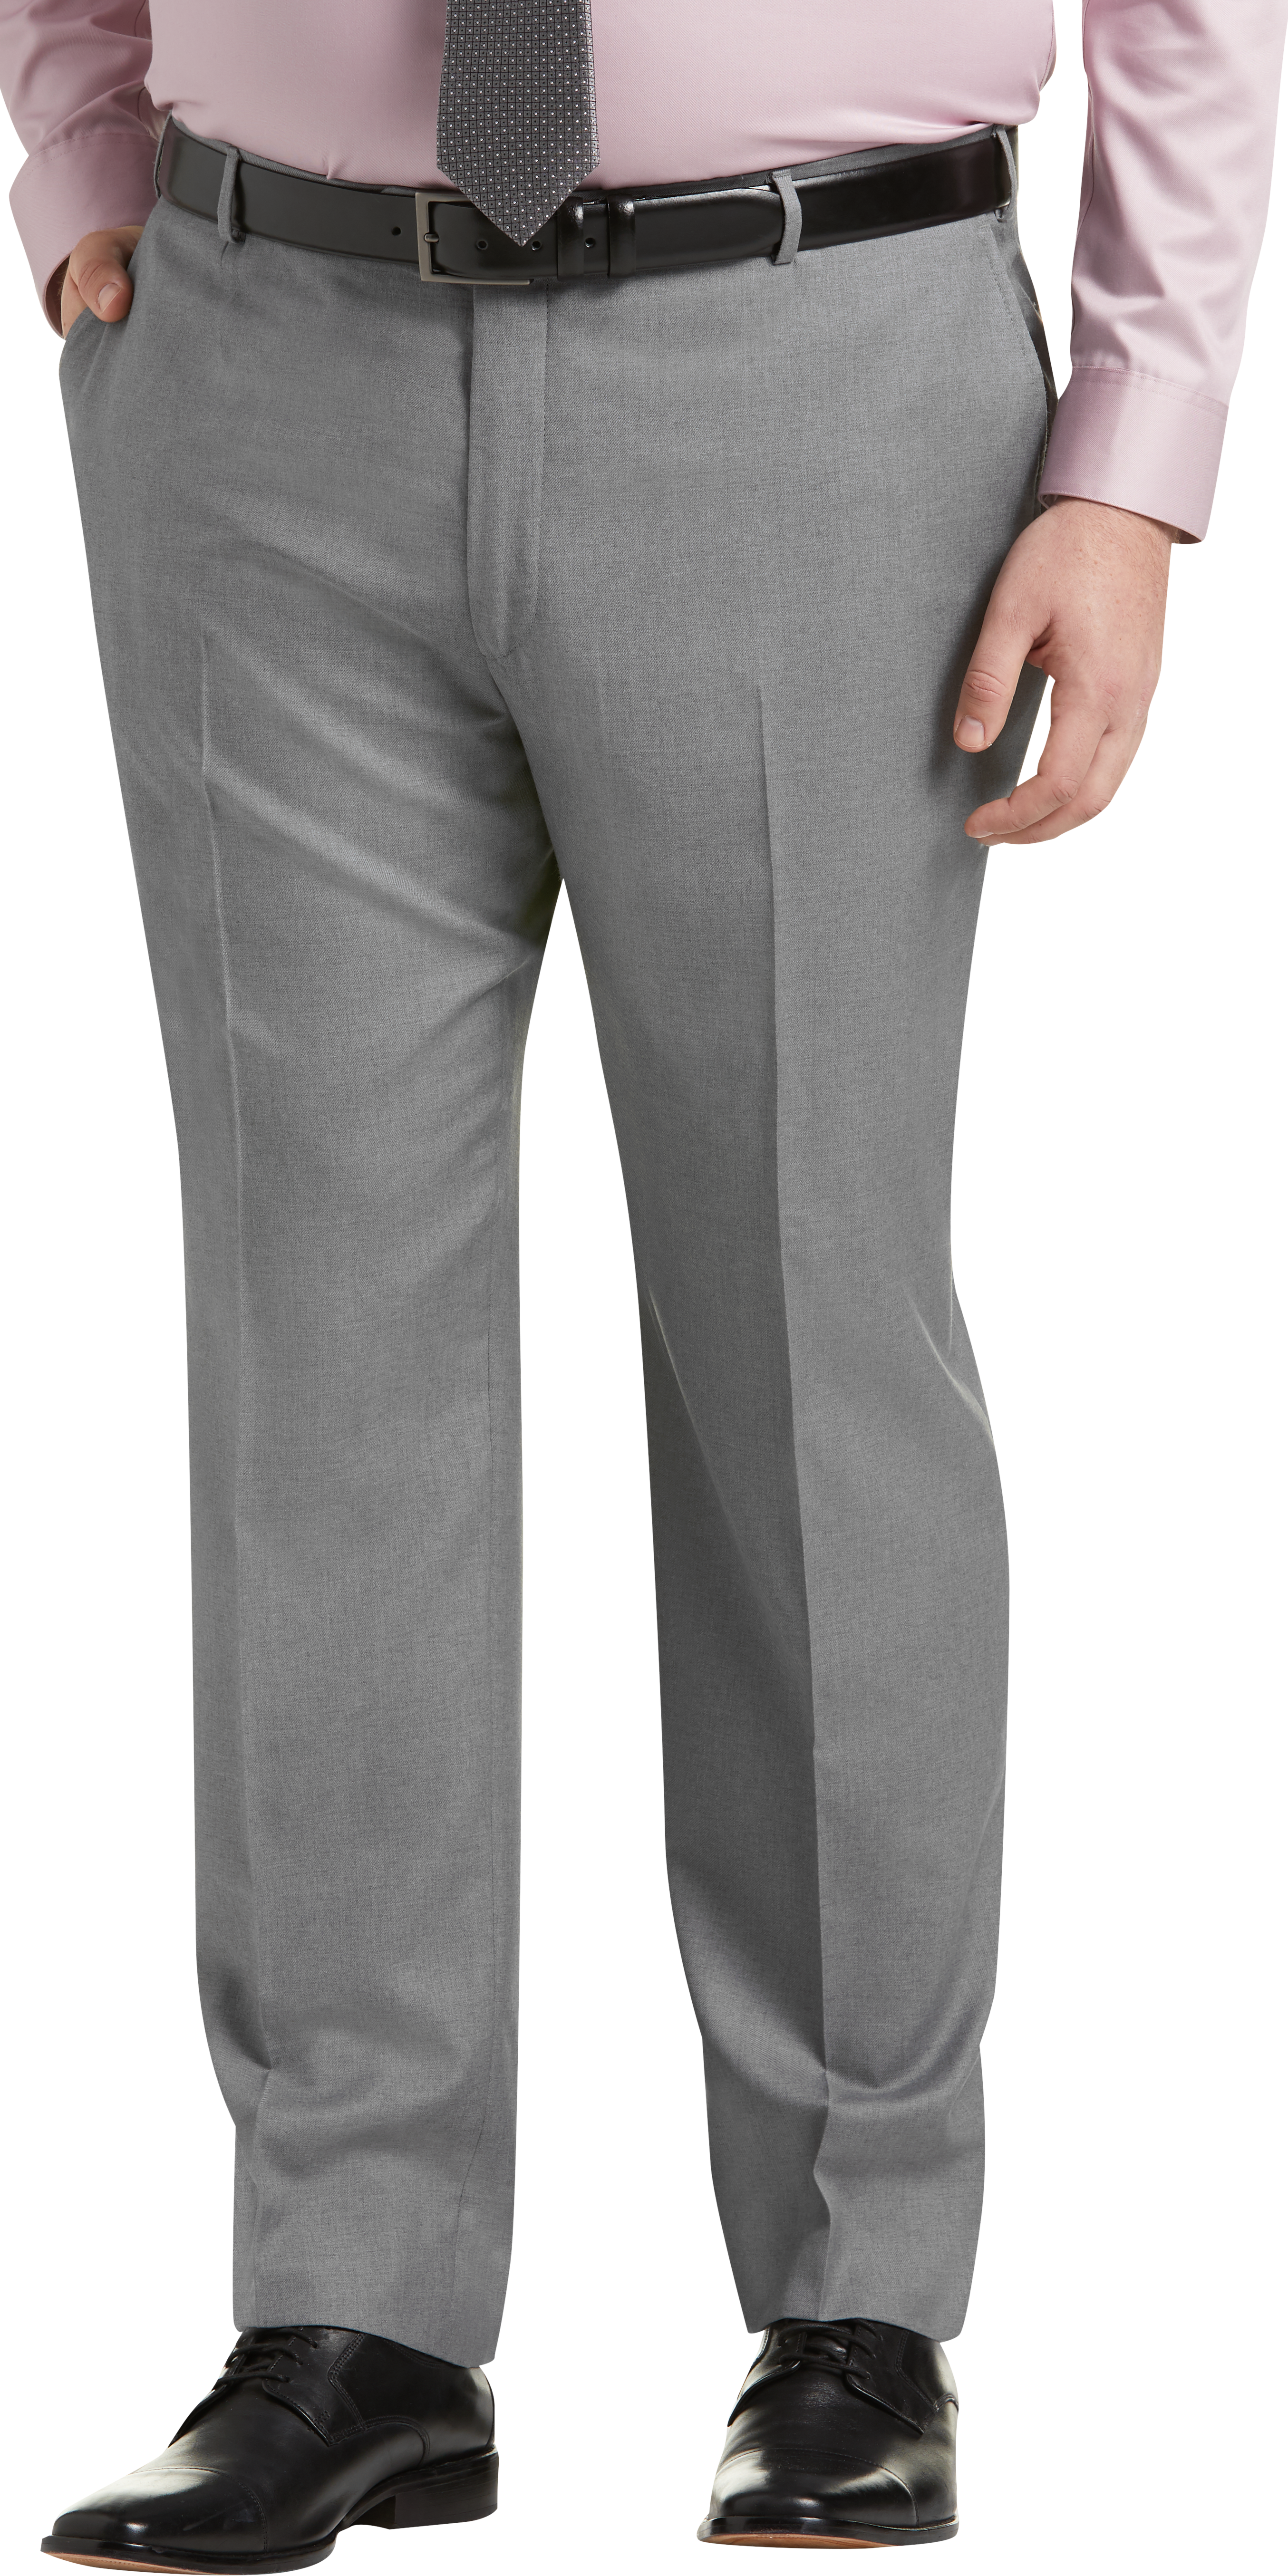 JOE Joseph Abboud Light Gray Suit Separate Pant, Executive Fit - Men's ...